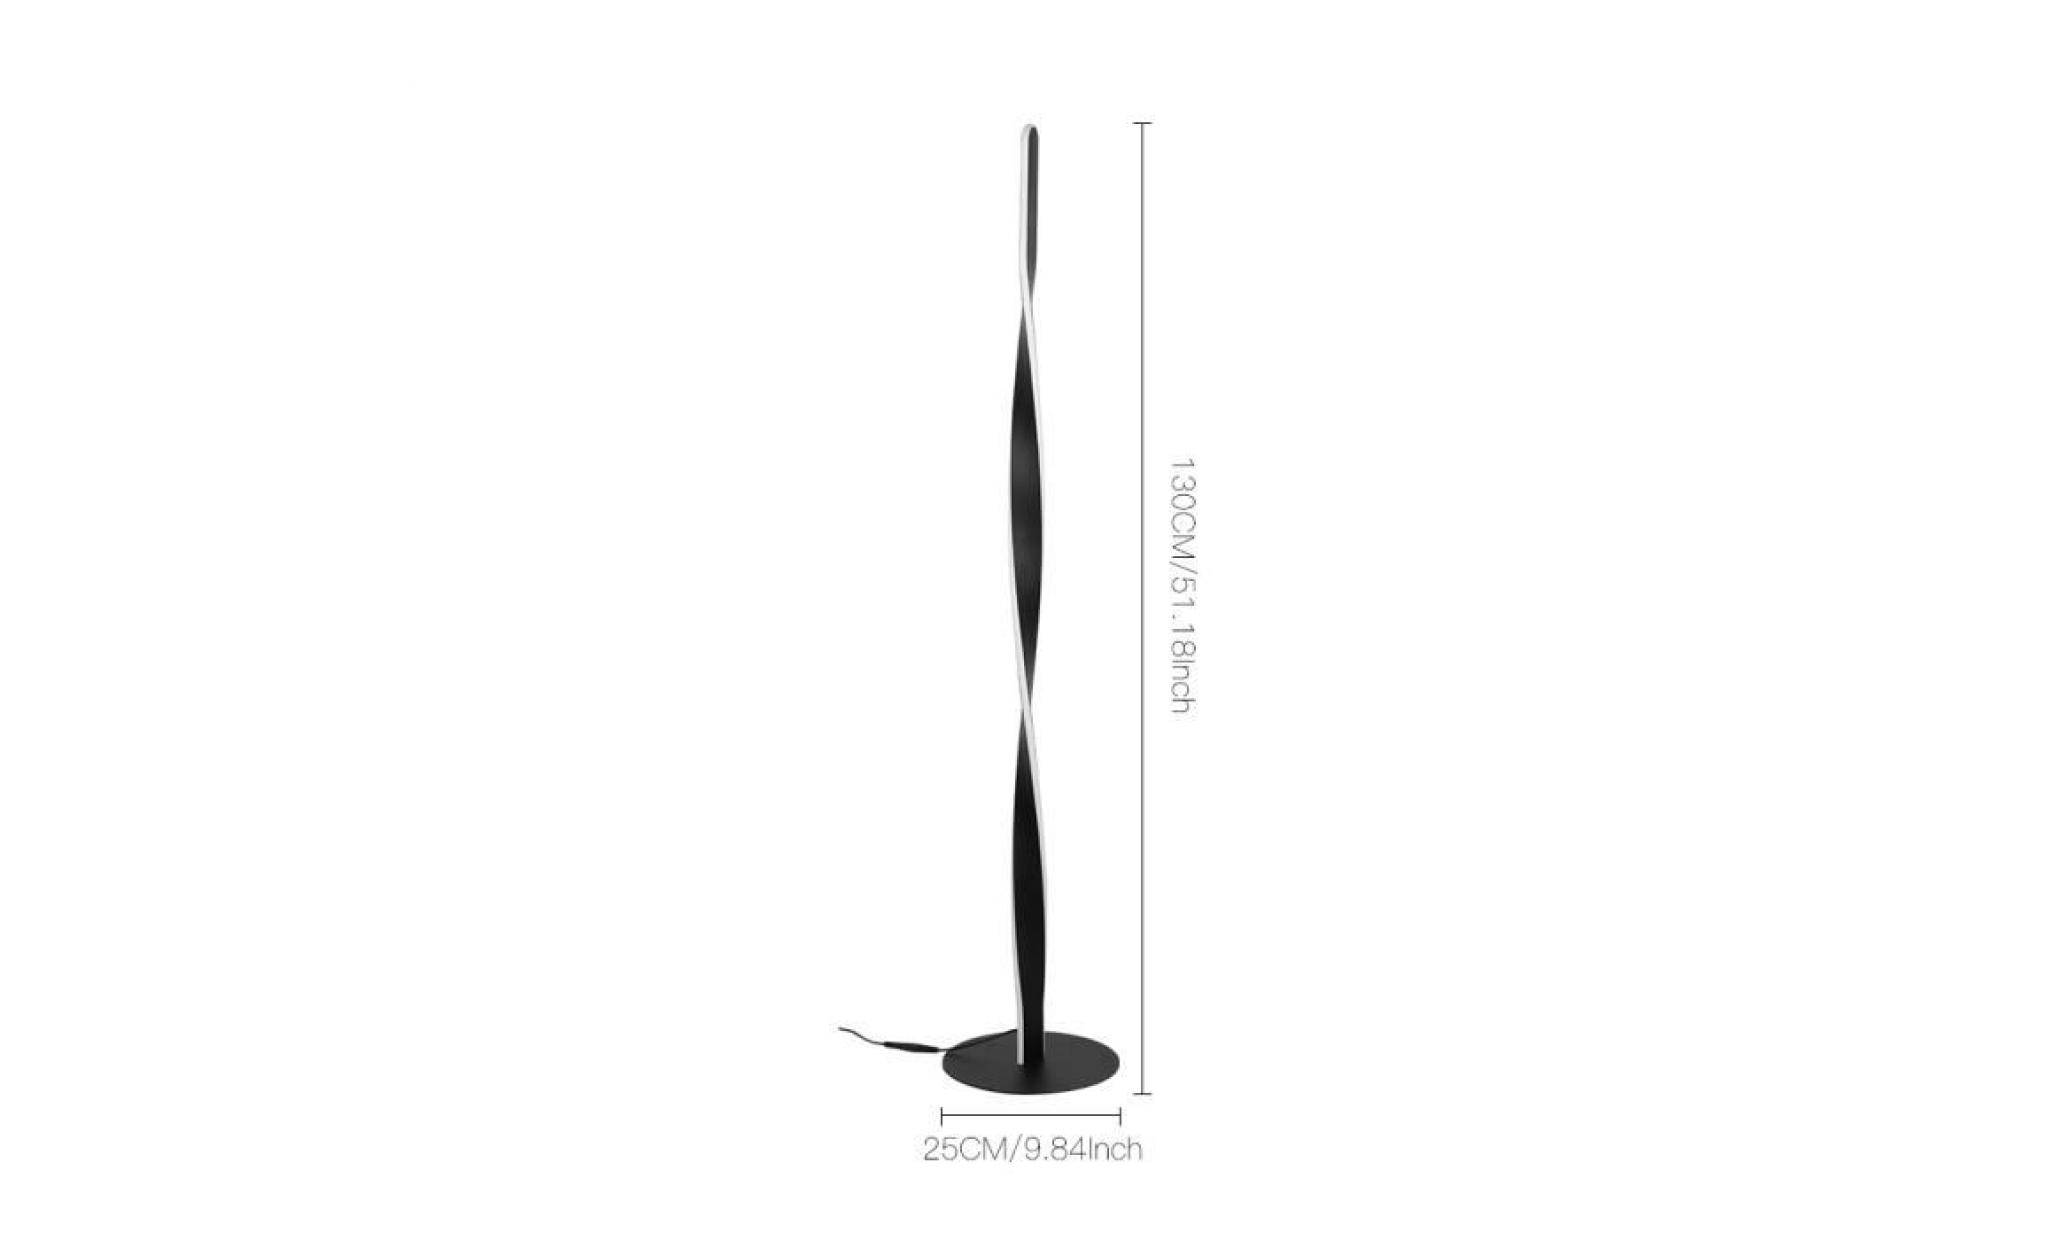 lampadaire salon led 30w dimmable spirale en métal créatif lampe led réglable blanc chaud décoration intérieur design moderne   noir pas cher